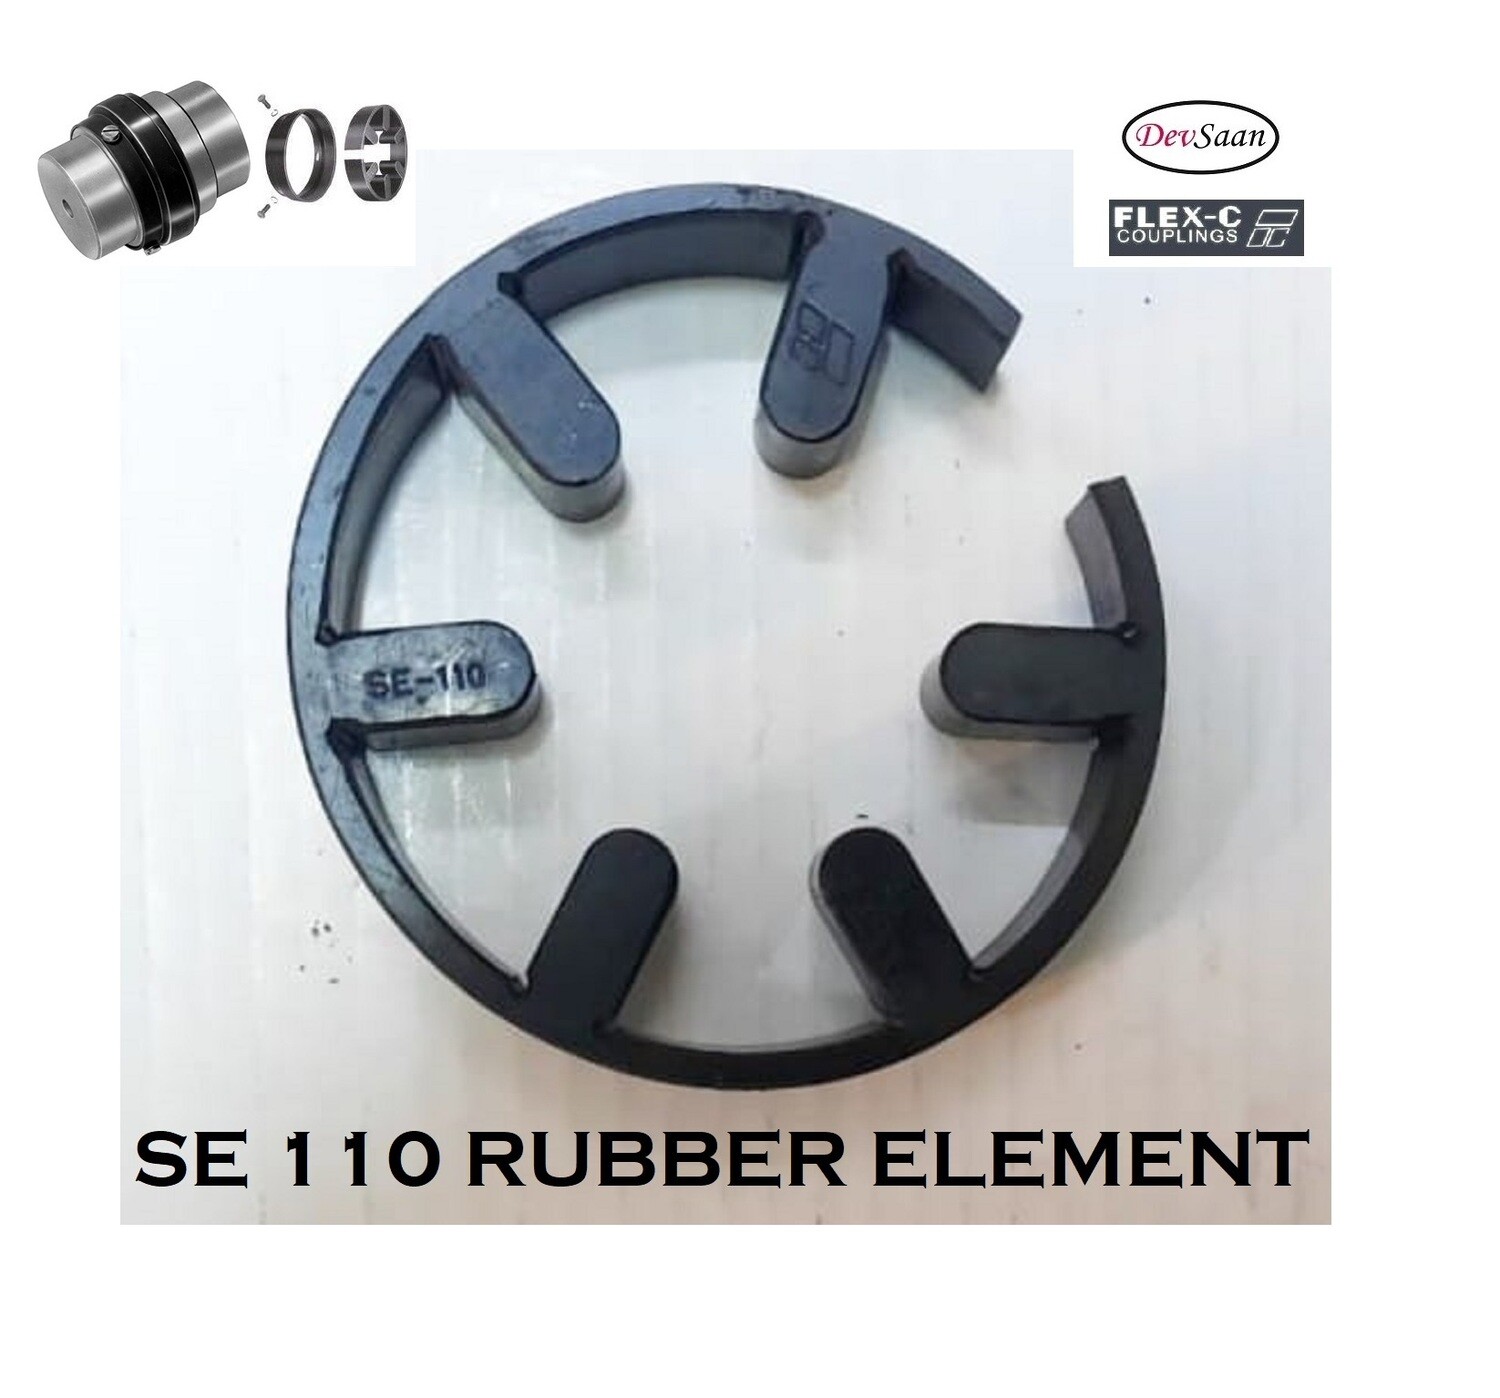 Coupling Rubber Element SE 110 Flex-C